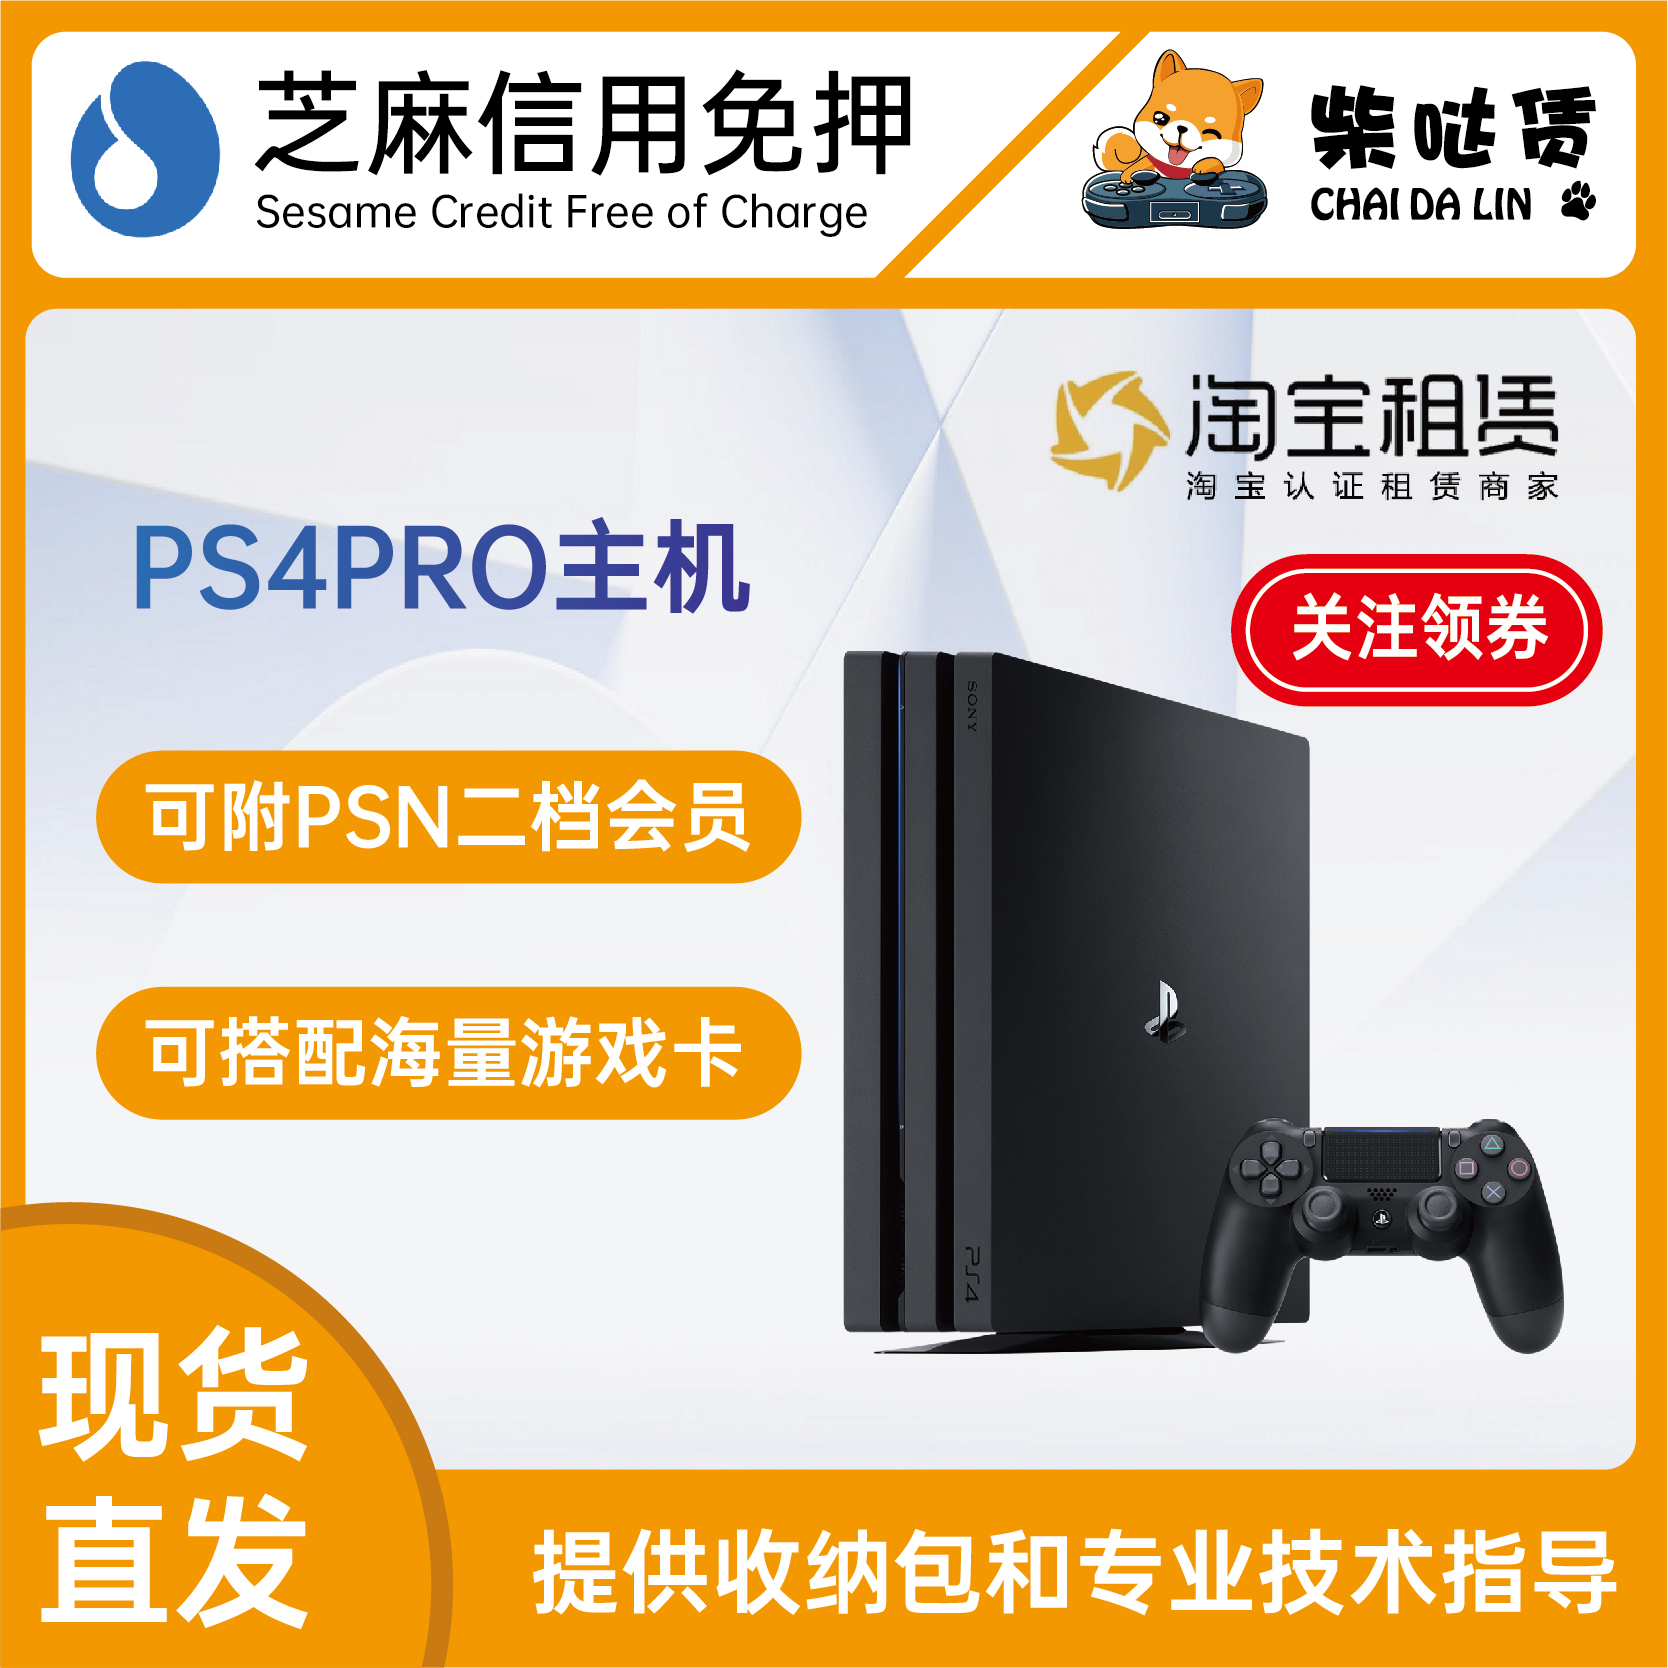 租游戏机 免押租赁 租ps4pro 附带PSN二档会员240款游戏和游戏盘